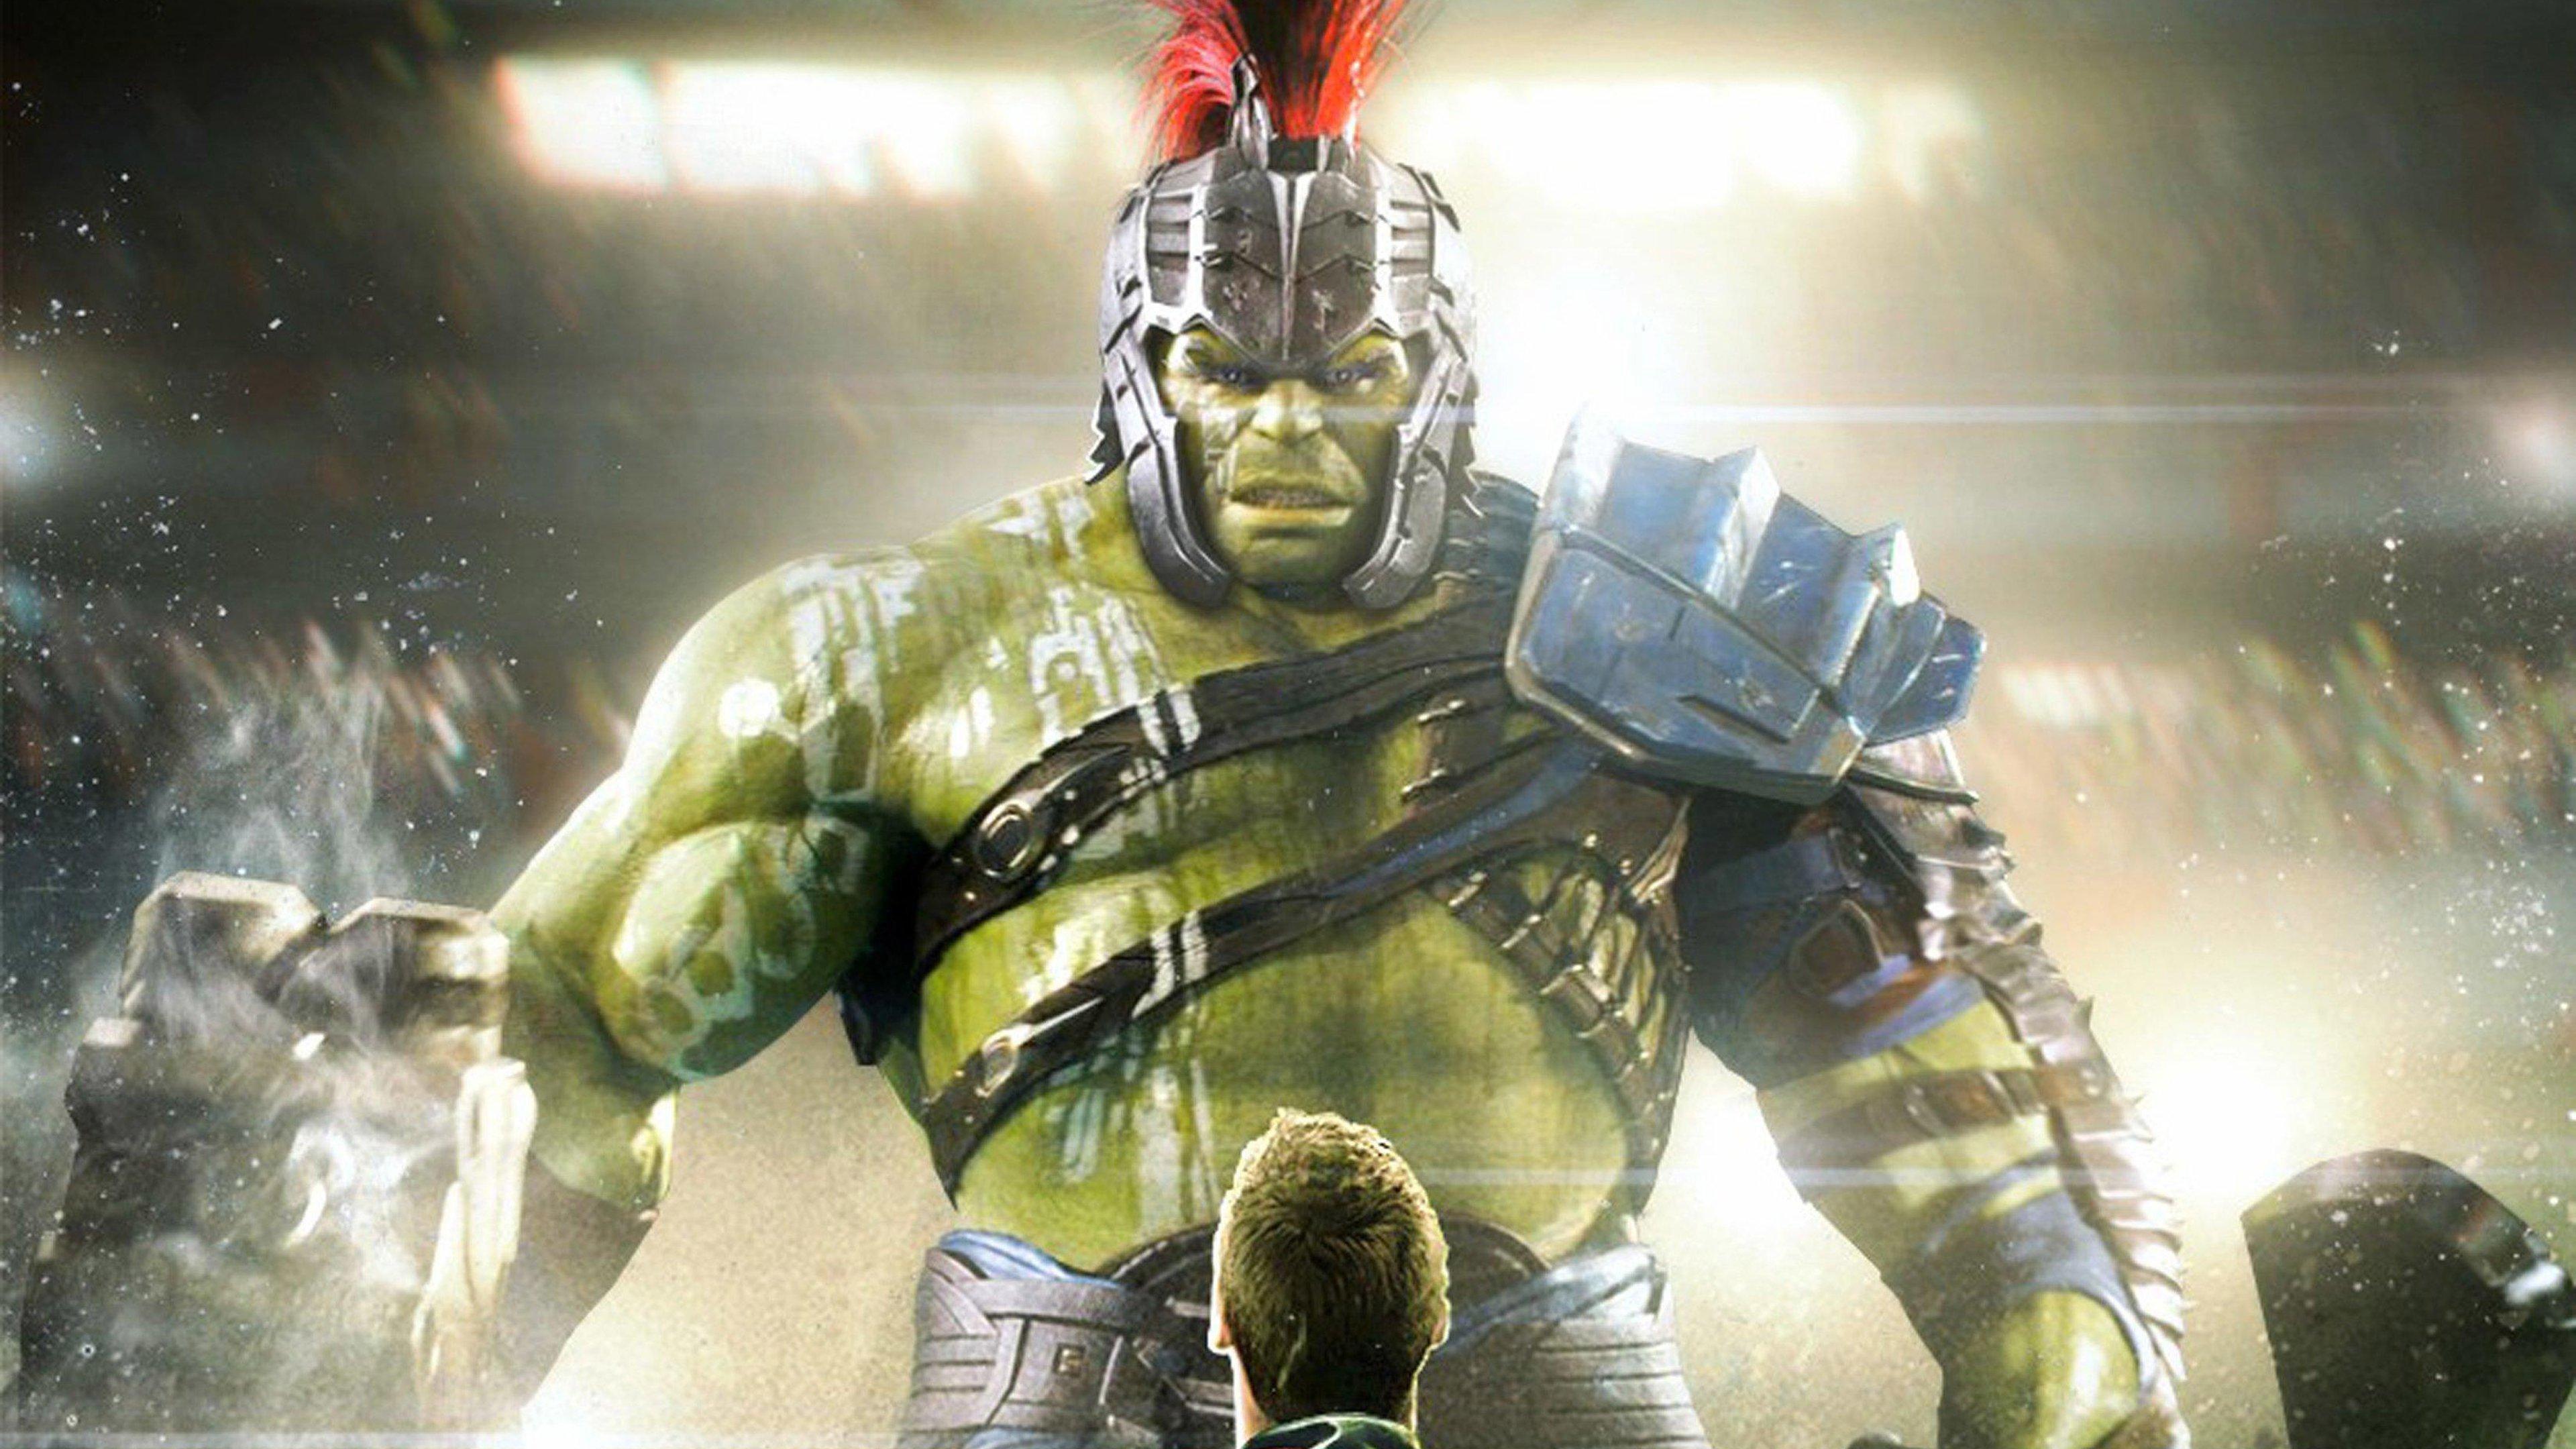 4K Image of Hulk